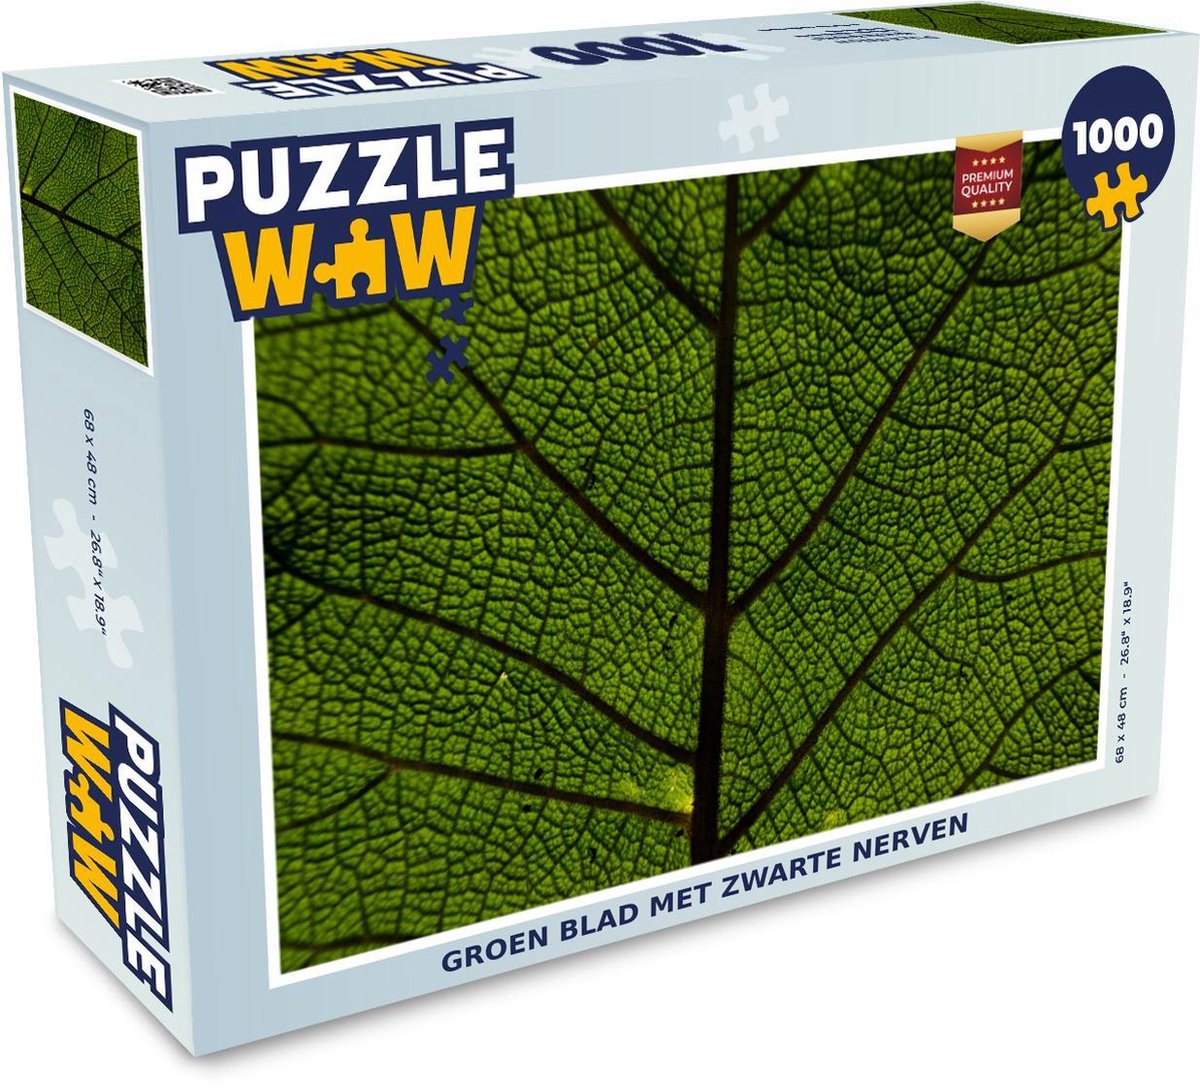 Afbeelding van product Puzzel 1000 stukjes volwassenen Close-Up Bladeren 1000 stukjes - Groen blad met zwarte nerven - PuzzleWow heeft +100000 puzzels